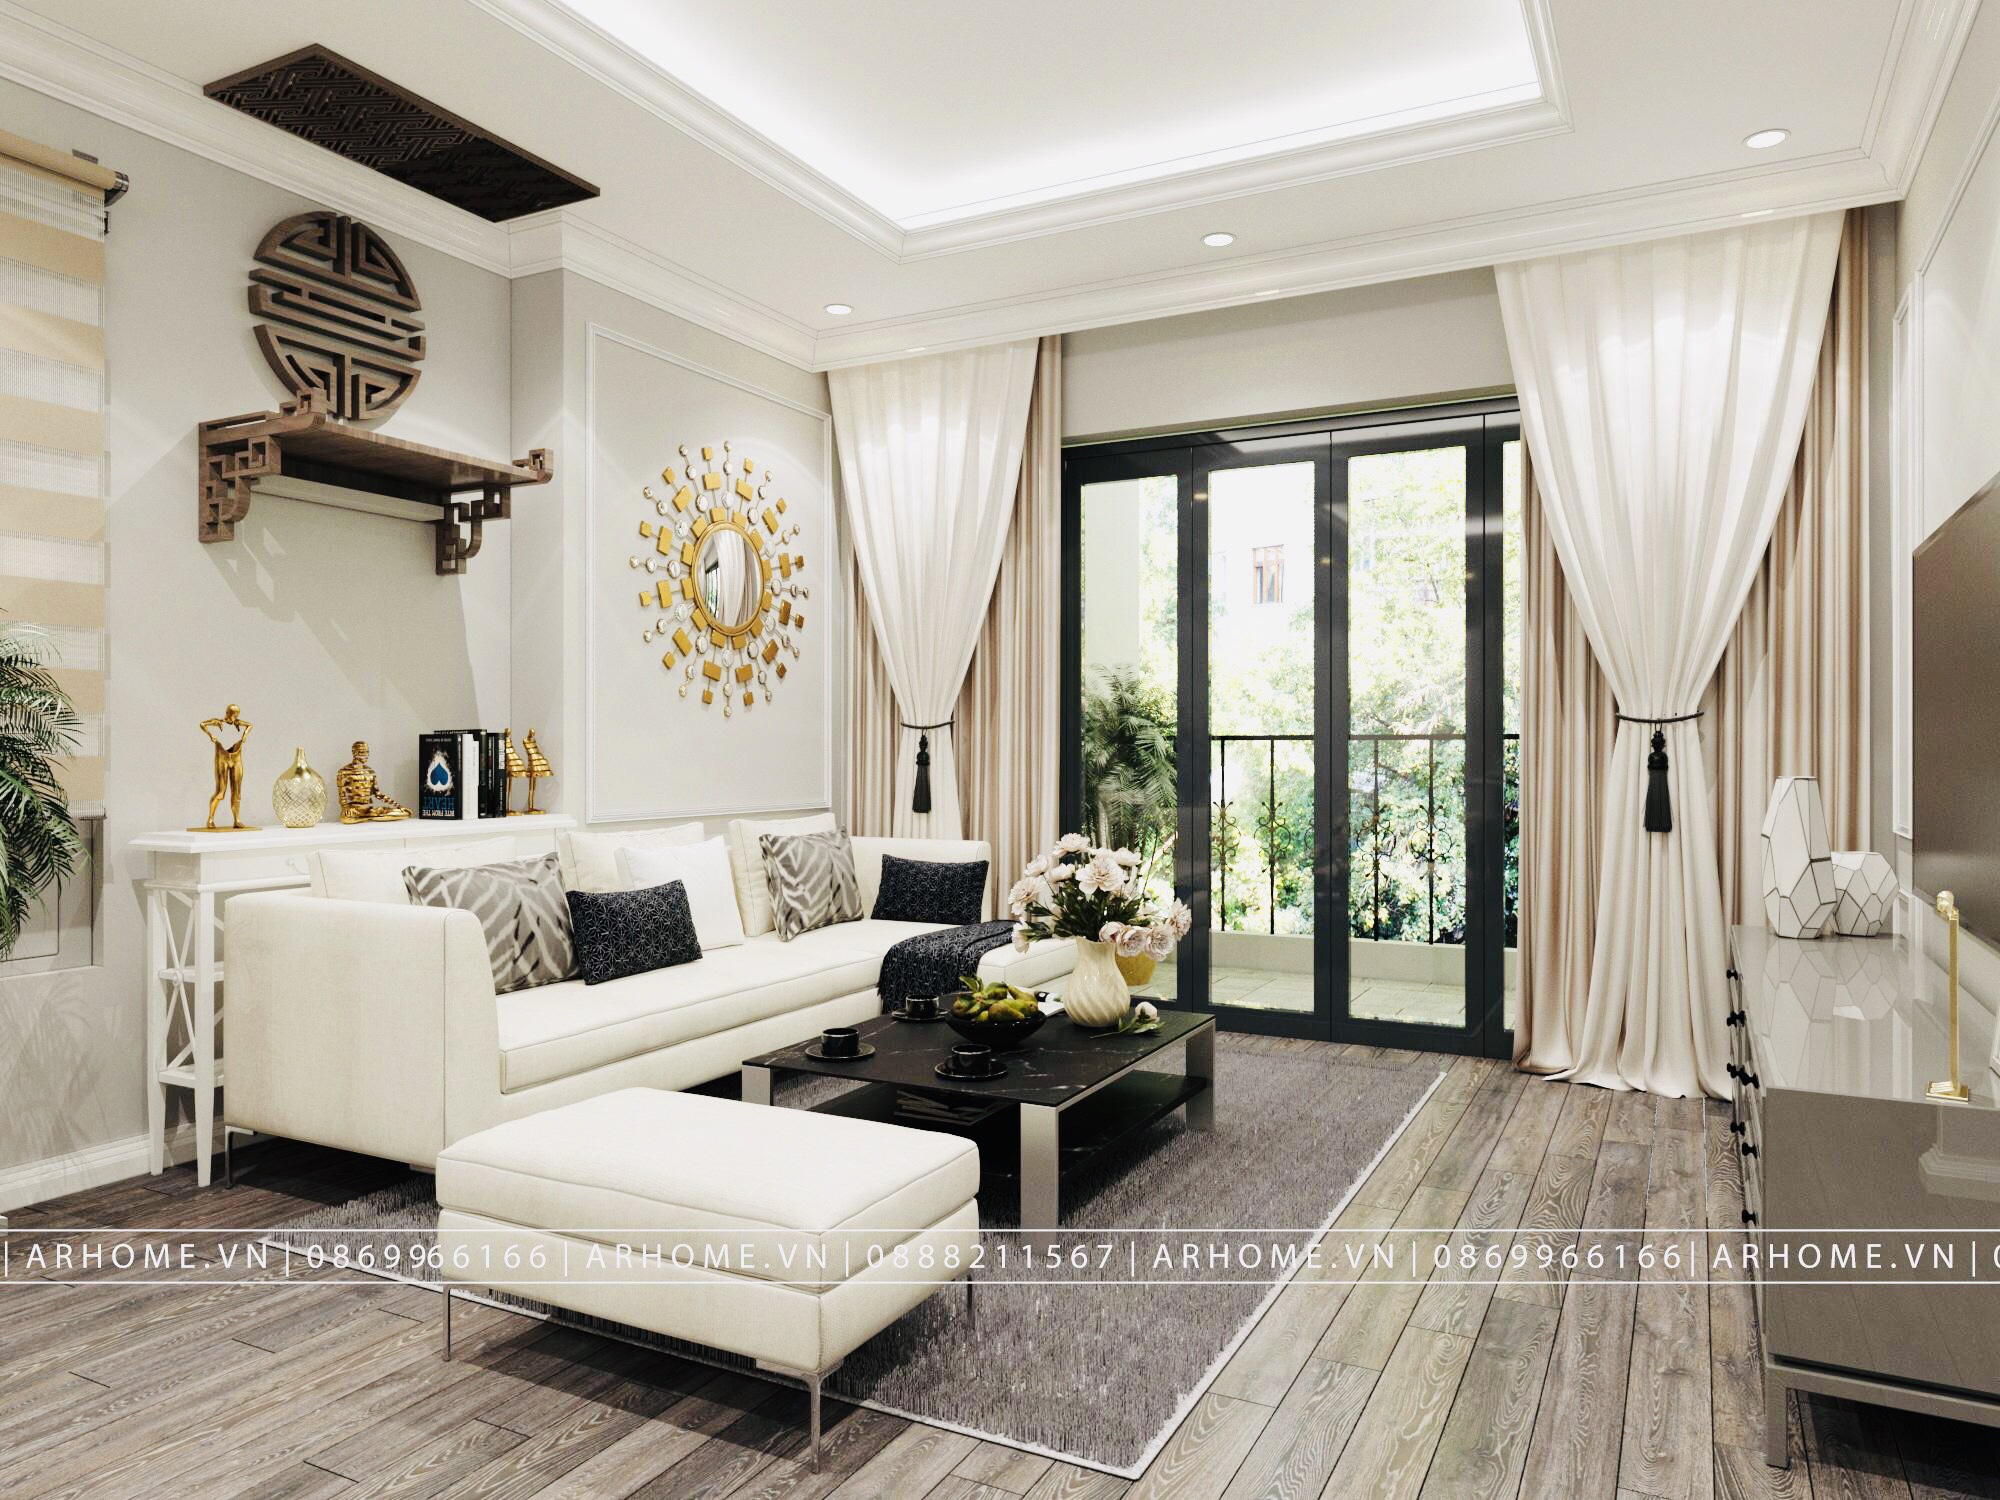 Thiết kế nội thất Chung Cư tại Hà Nội Thiết kế nội thất căn hộ tân cổ điển 96m2 dự án Thăng Long Capital 1602745620 0